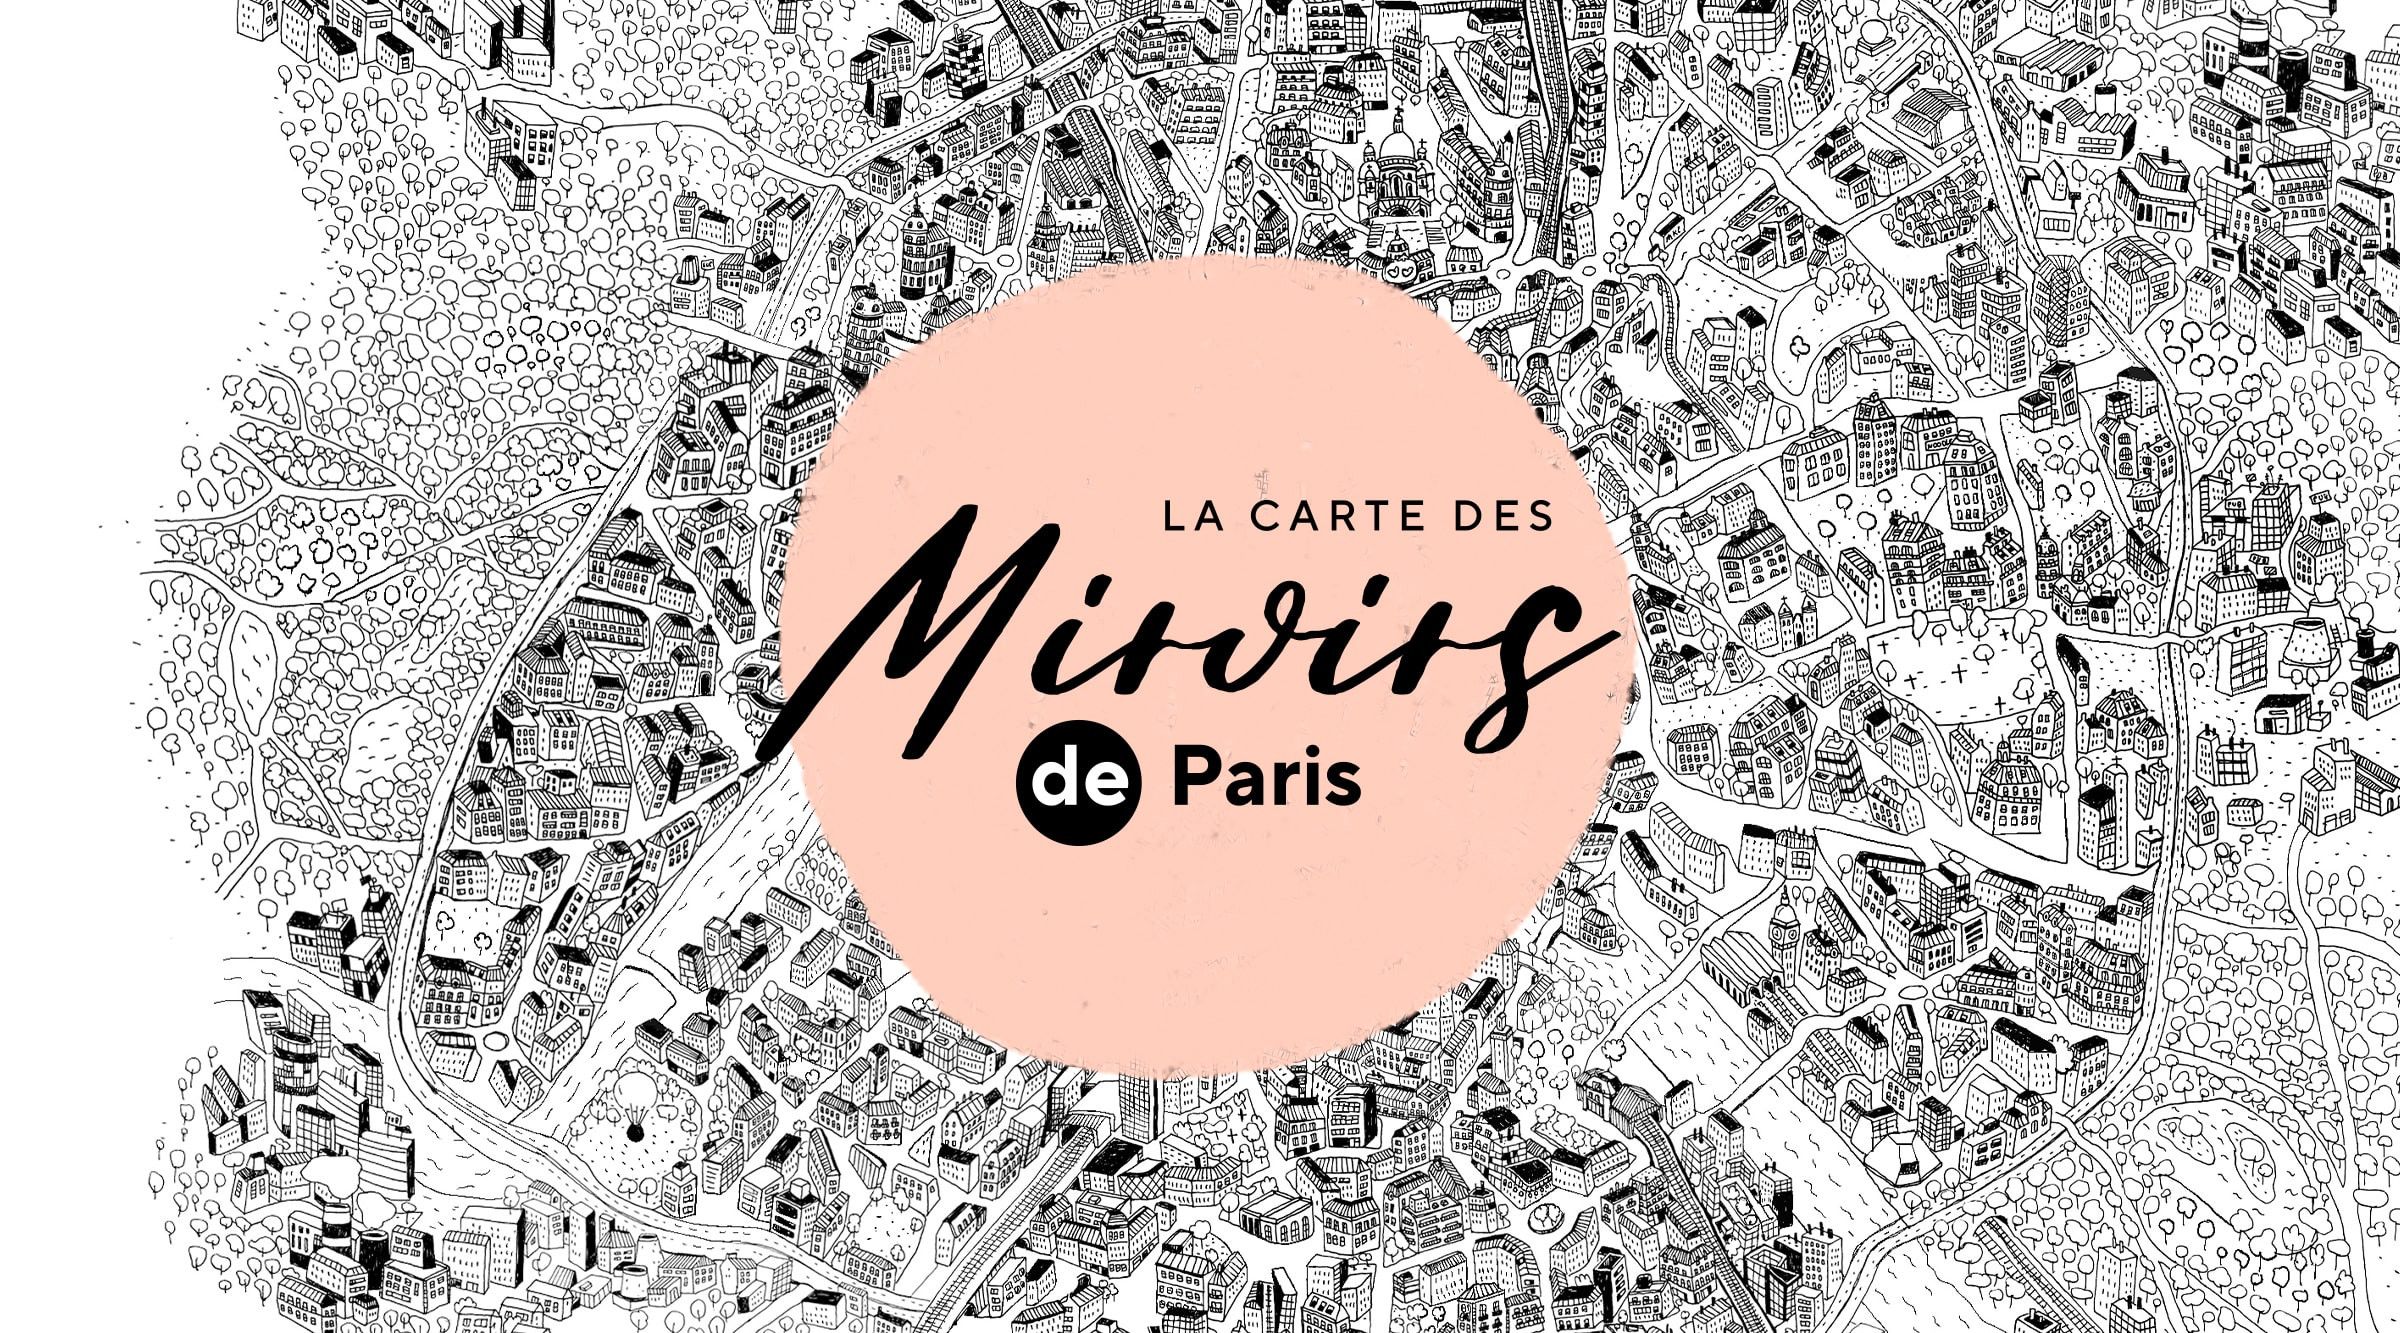 La carte des miroirs de Paris